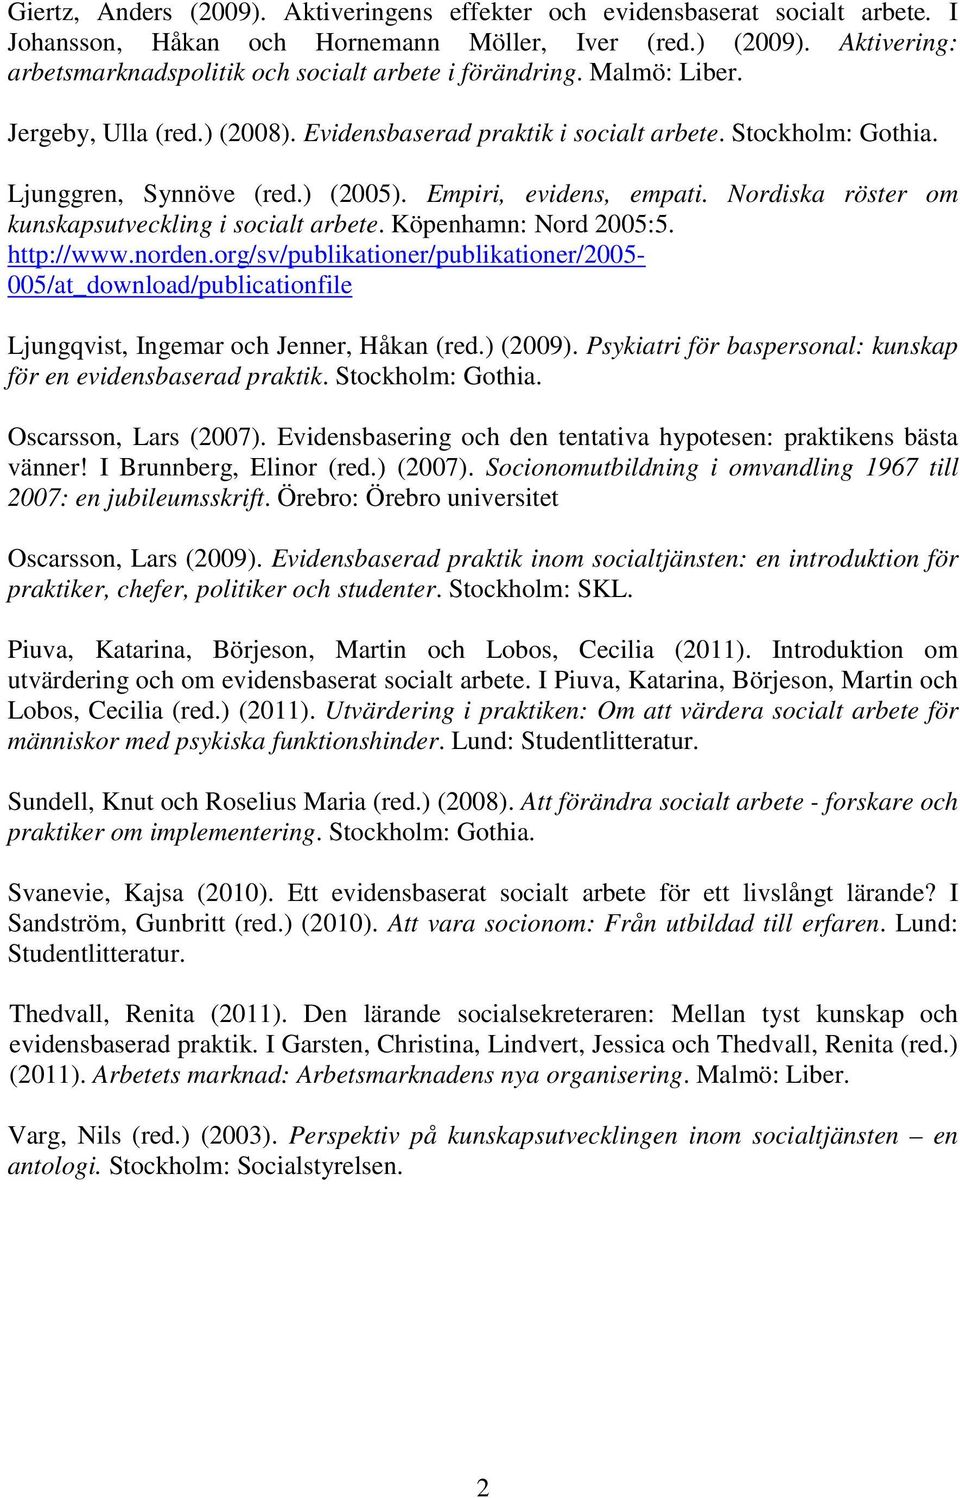 ) (2005). Empiri, evidens, empati. Nordiska röster om kunskapsutveckling i socialt arbete. Köpenhamn: Nord 2005:5. http://www.norden.